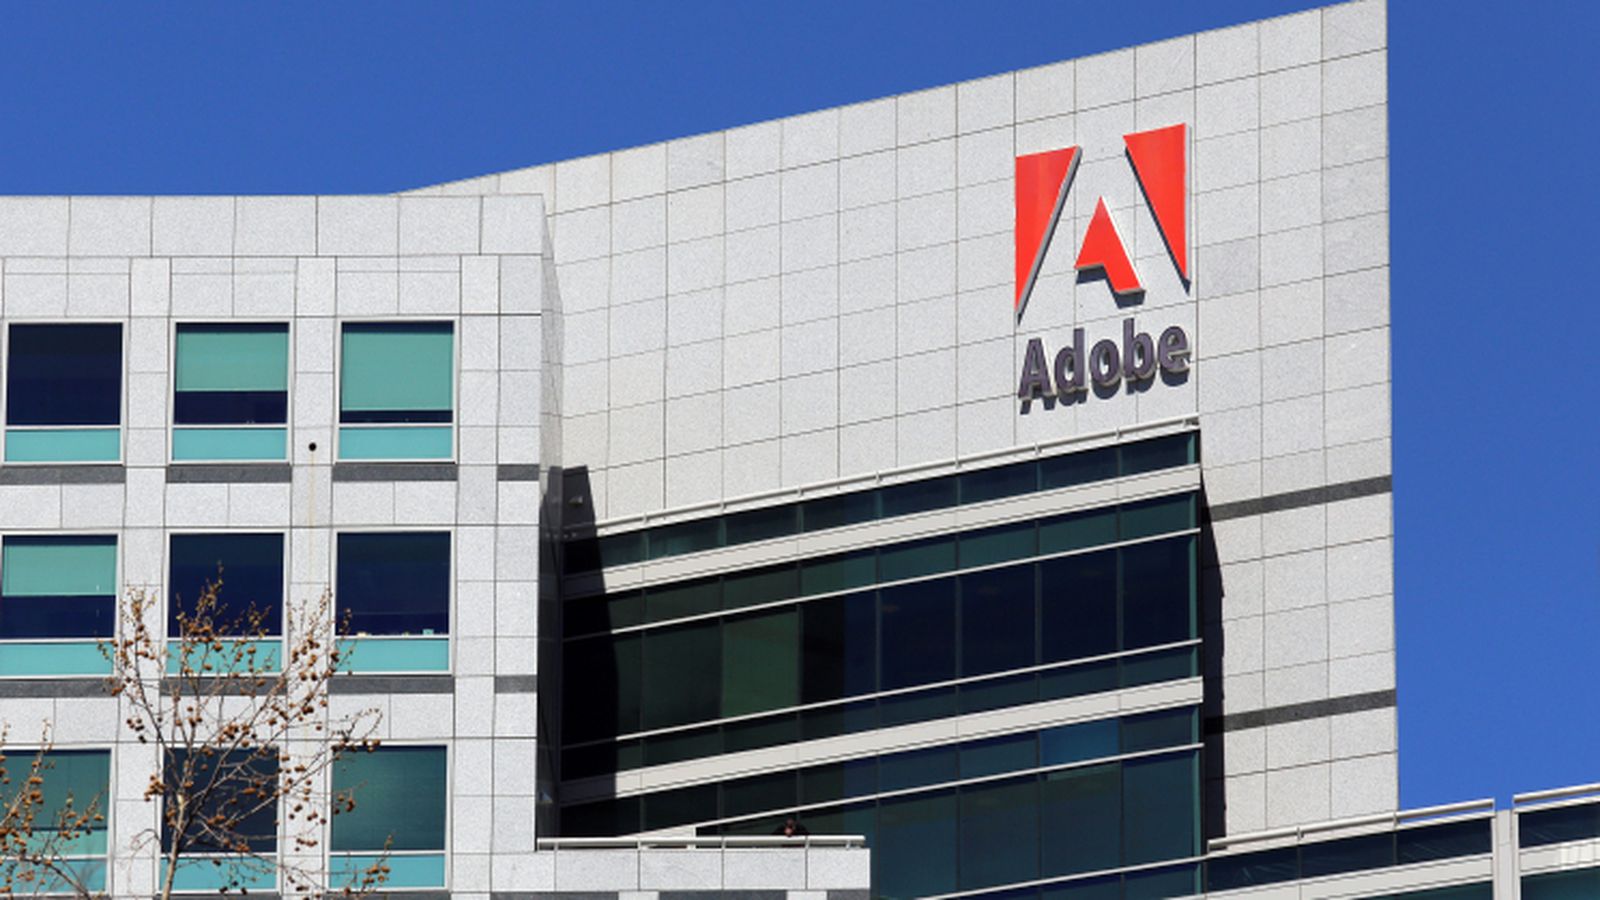 شركة أدوبي "Adobe"